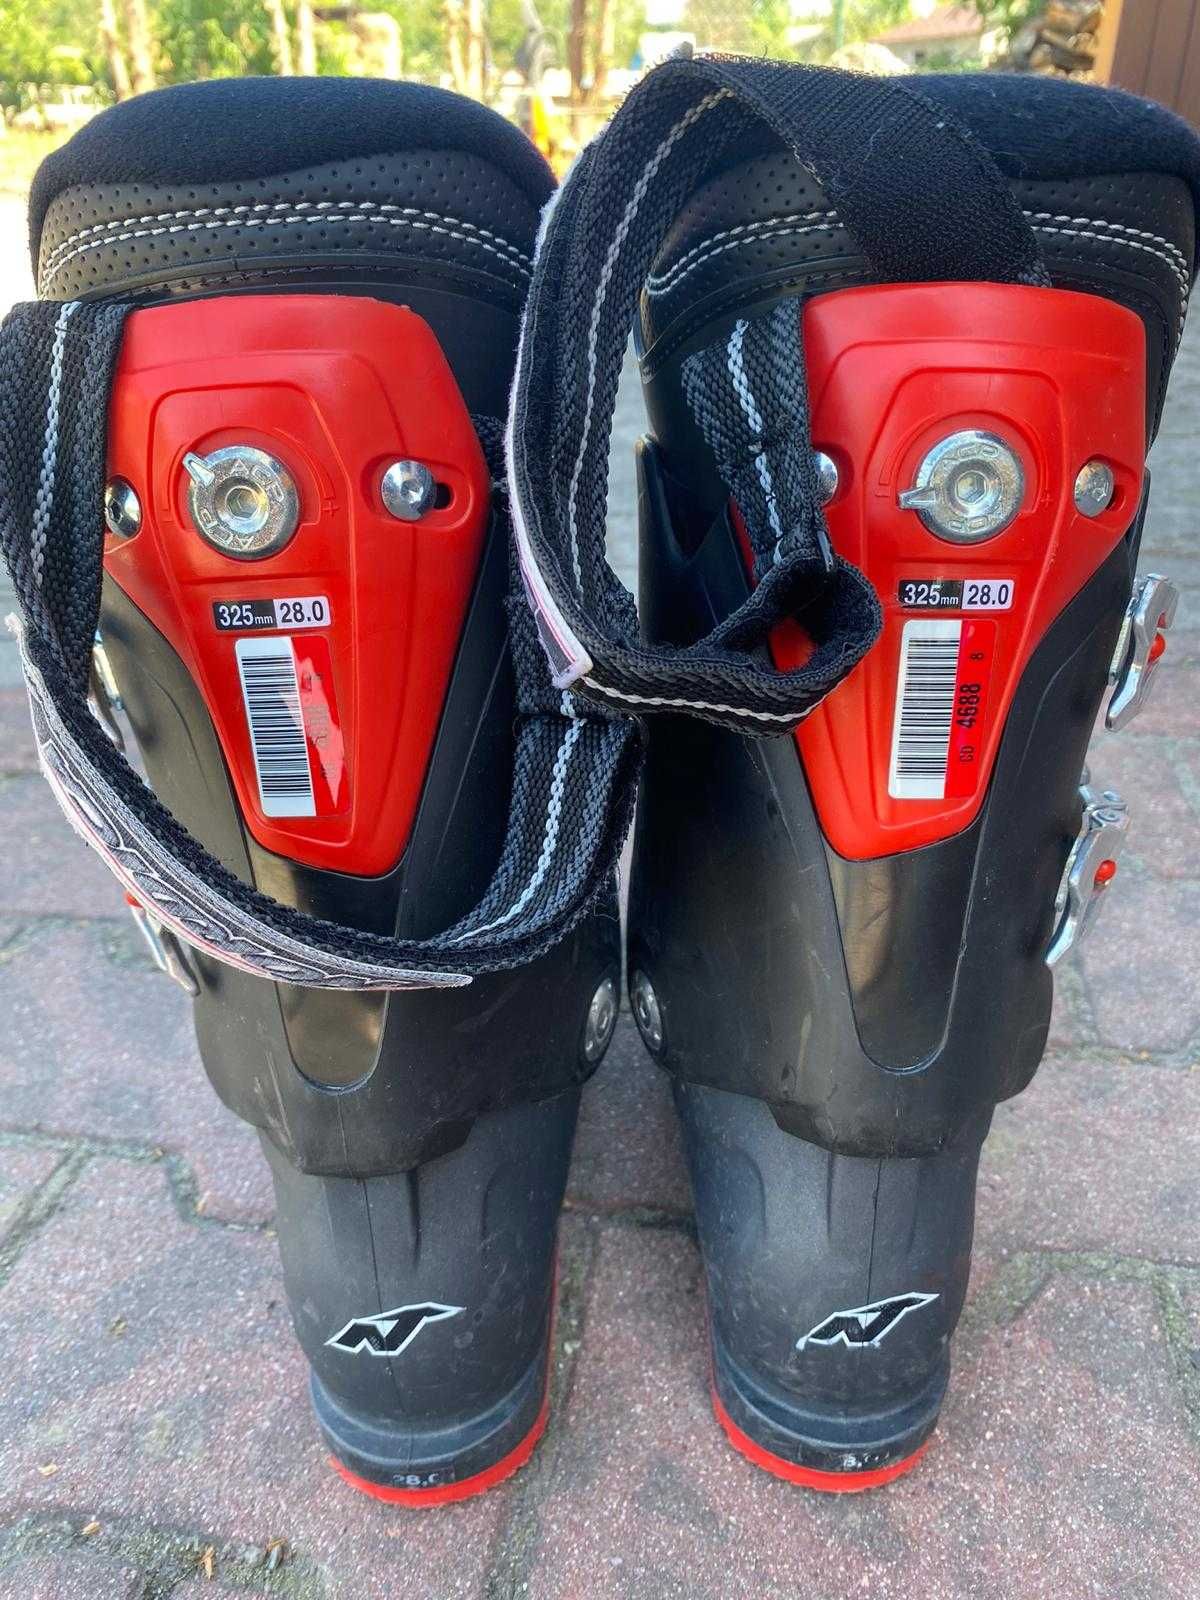 Buty narciarskie zjazdowe Nordica NXT X80R, rozmiar 28,5cm 325mm